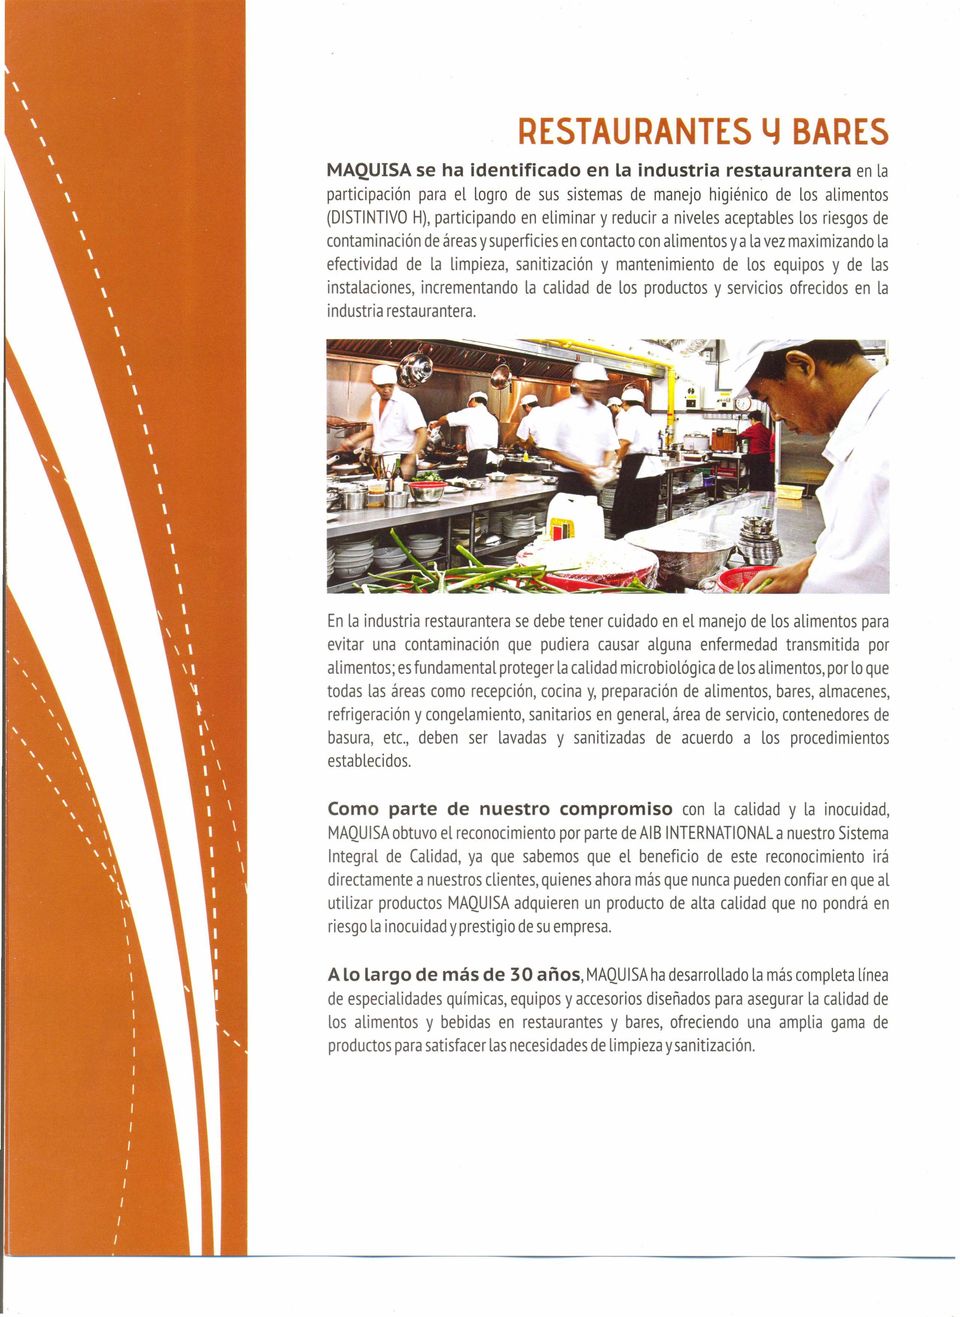 de los equipos y de las instalaciones incrementando la calidad de los productos y servicios ofrecidos en la industria restaurantera.